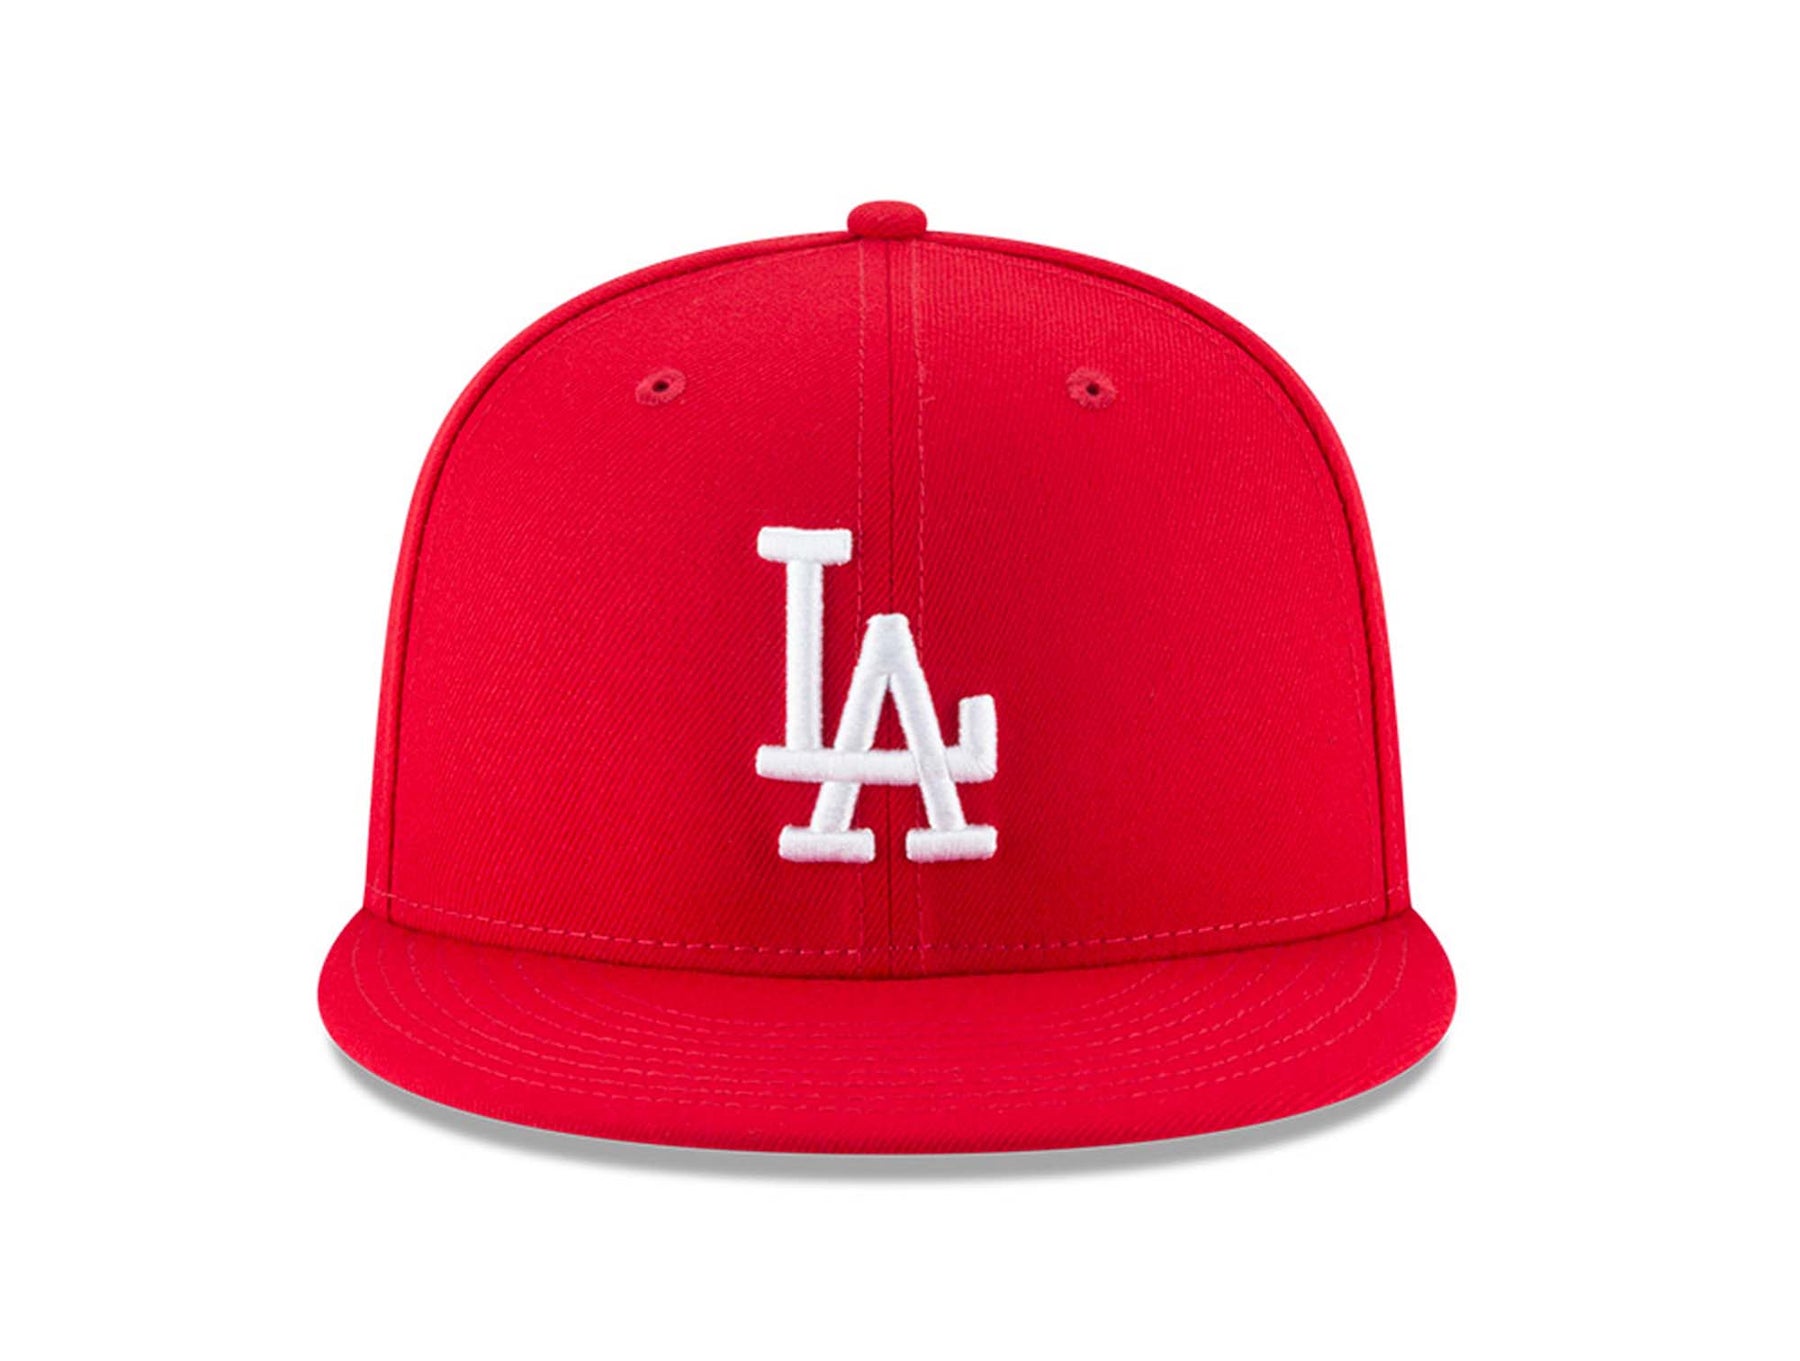 Colección de gorras de Los Angeles Dodgers. Jockeys originales New Era